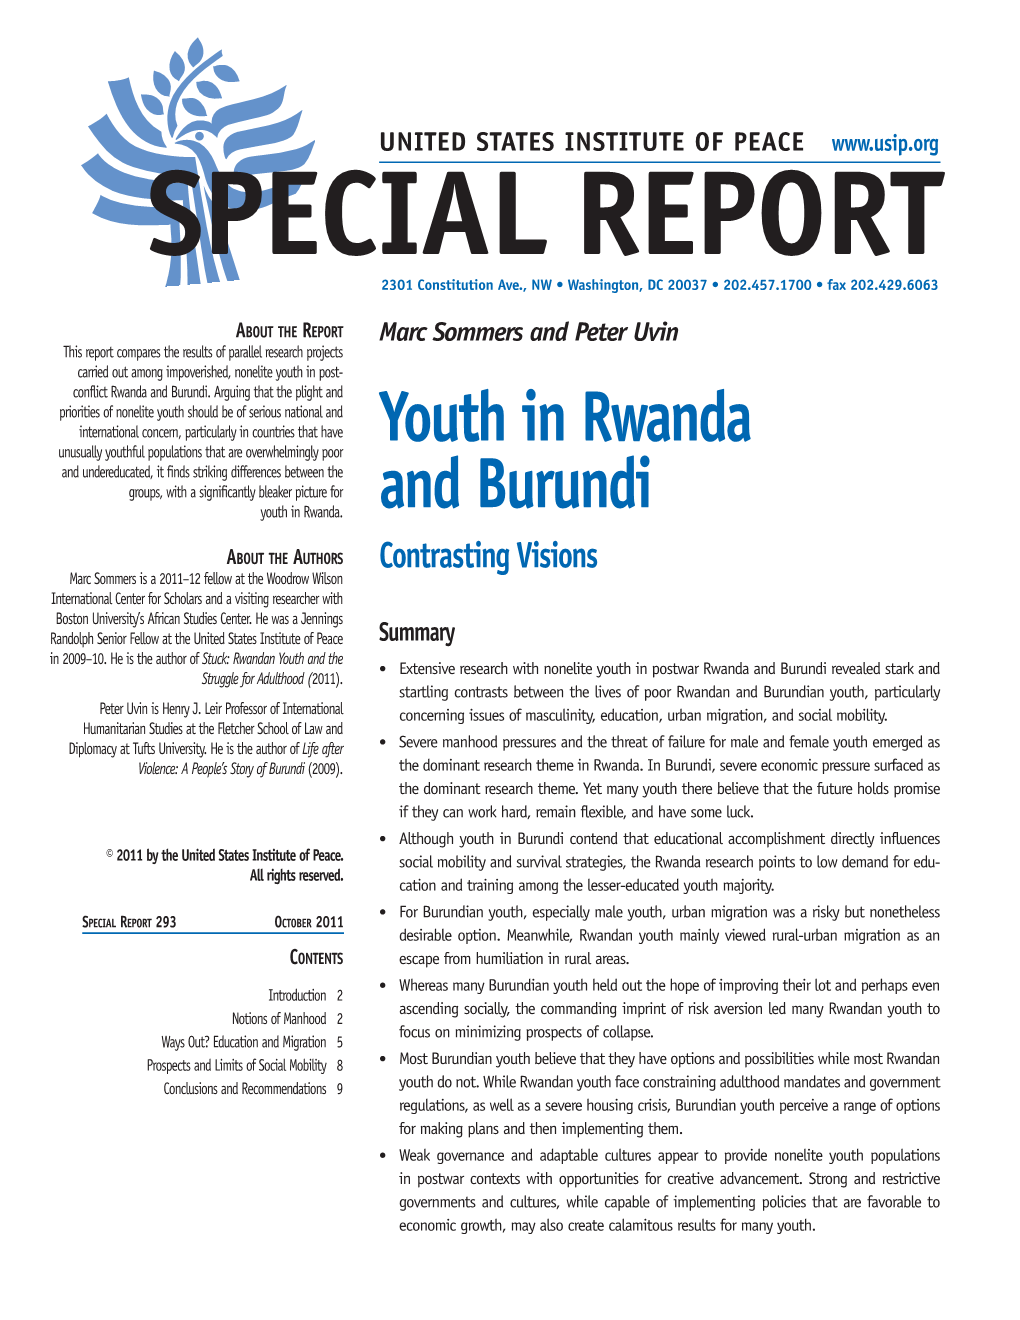 Youth in Rwanda and Burundi